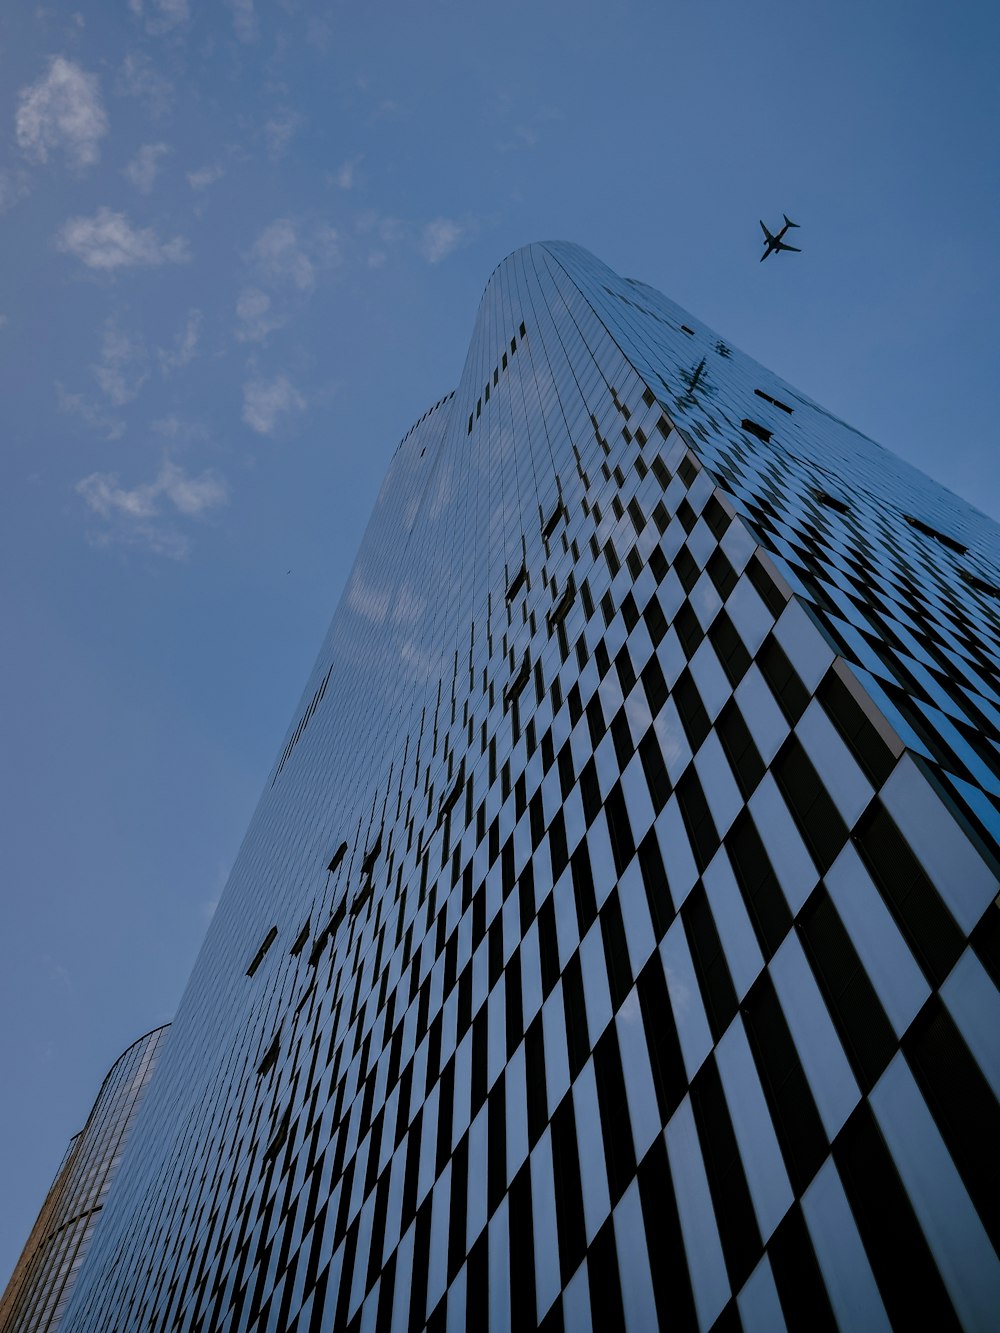 市松模様のデザインの高層ビルの上空を飛ぶ飛行機